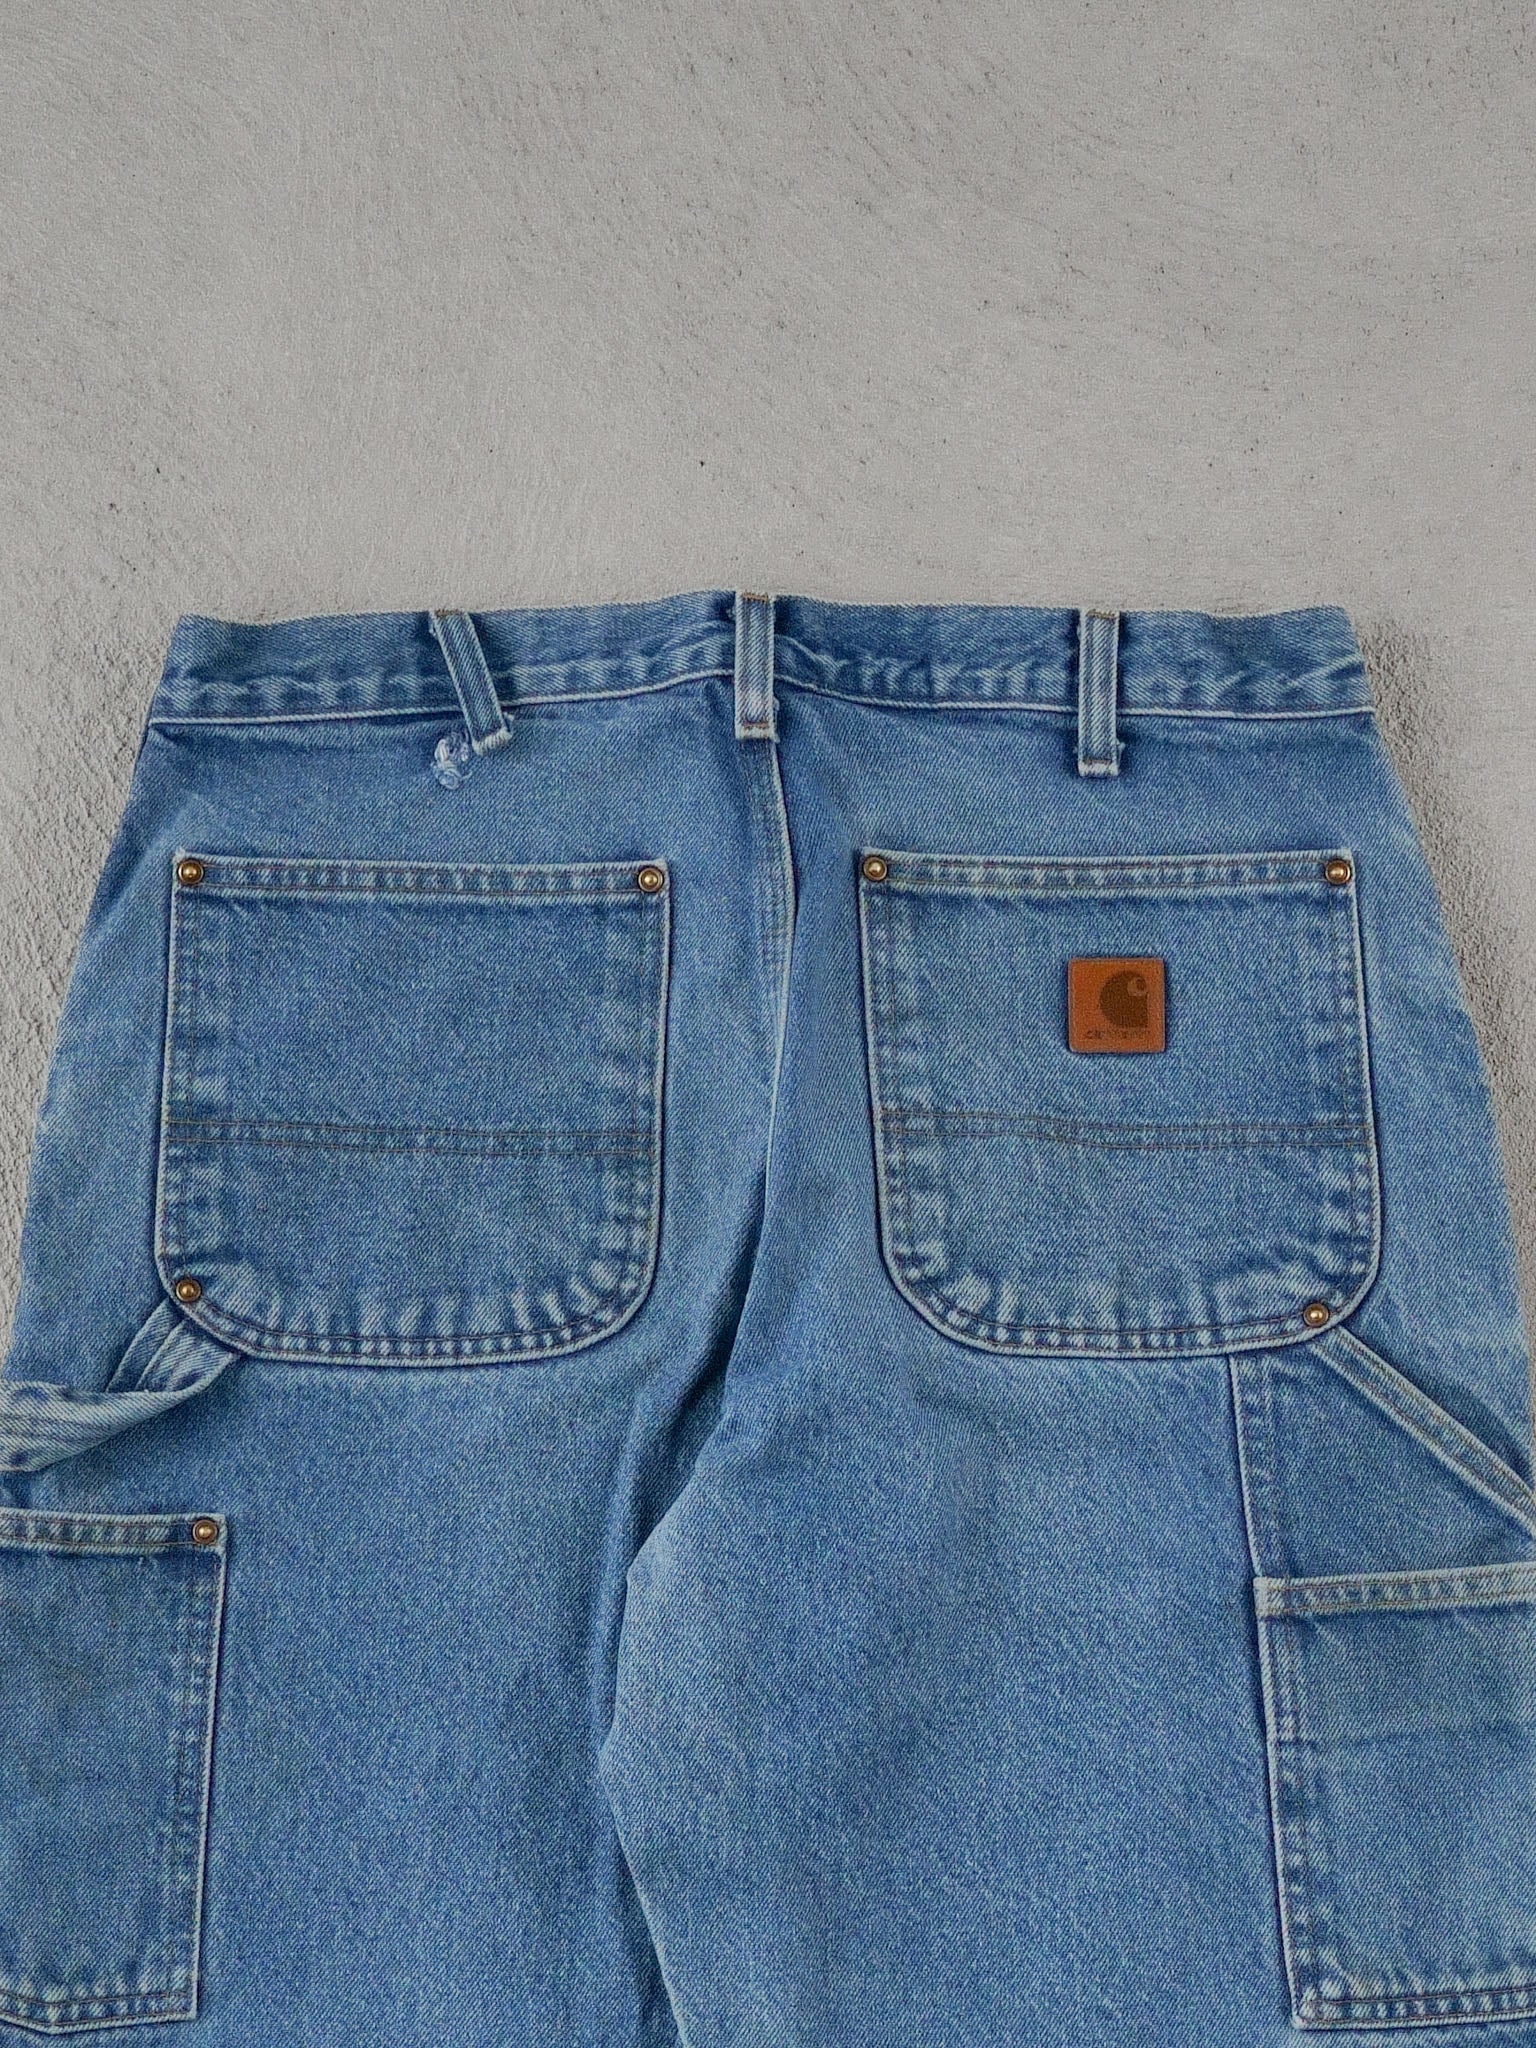 Vintage 90s Blue Carhartt Double Knee Carpenter Pants (32x30)